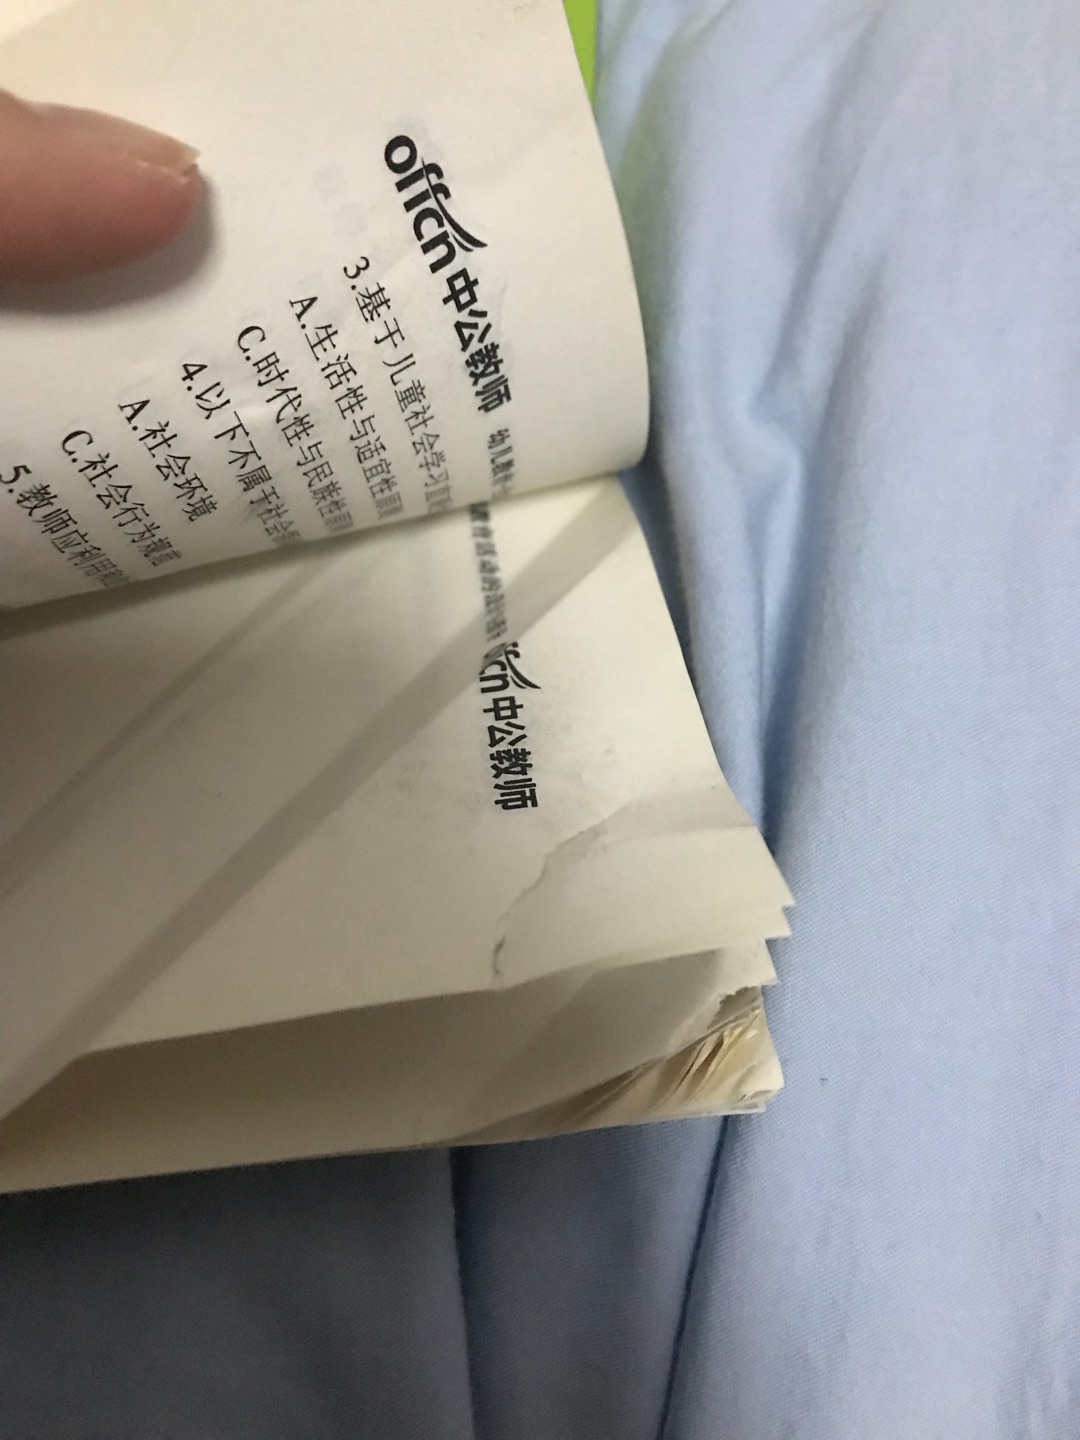 书本寄来的时候就破了是很脏